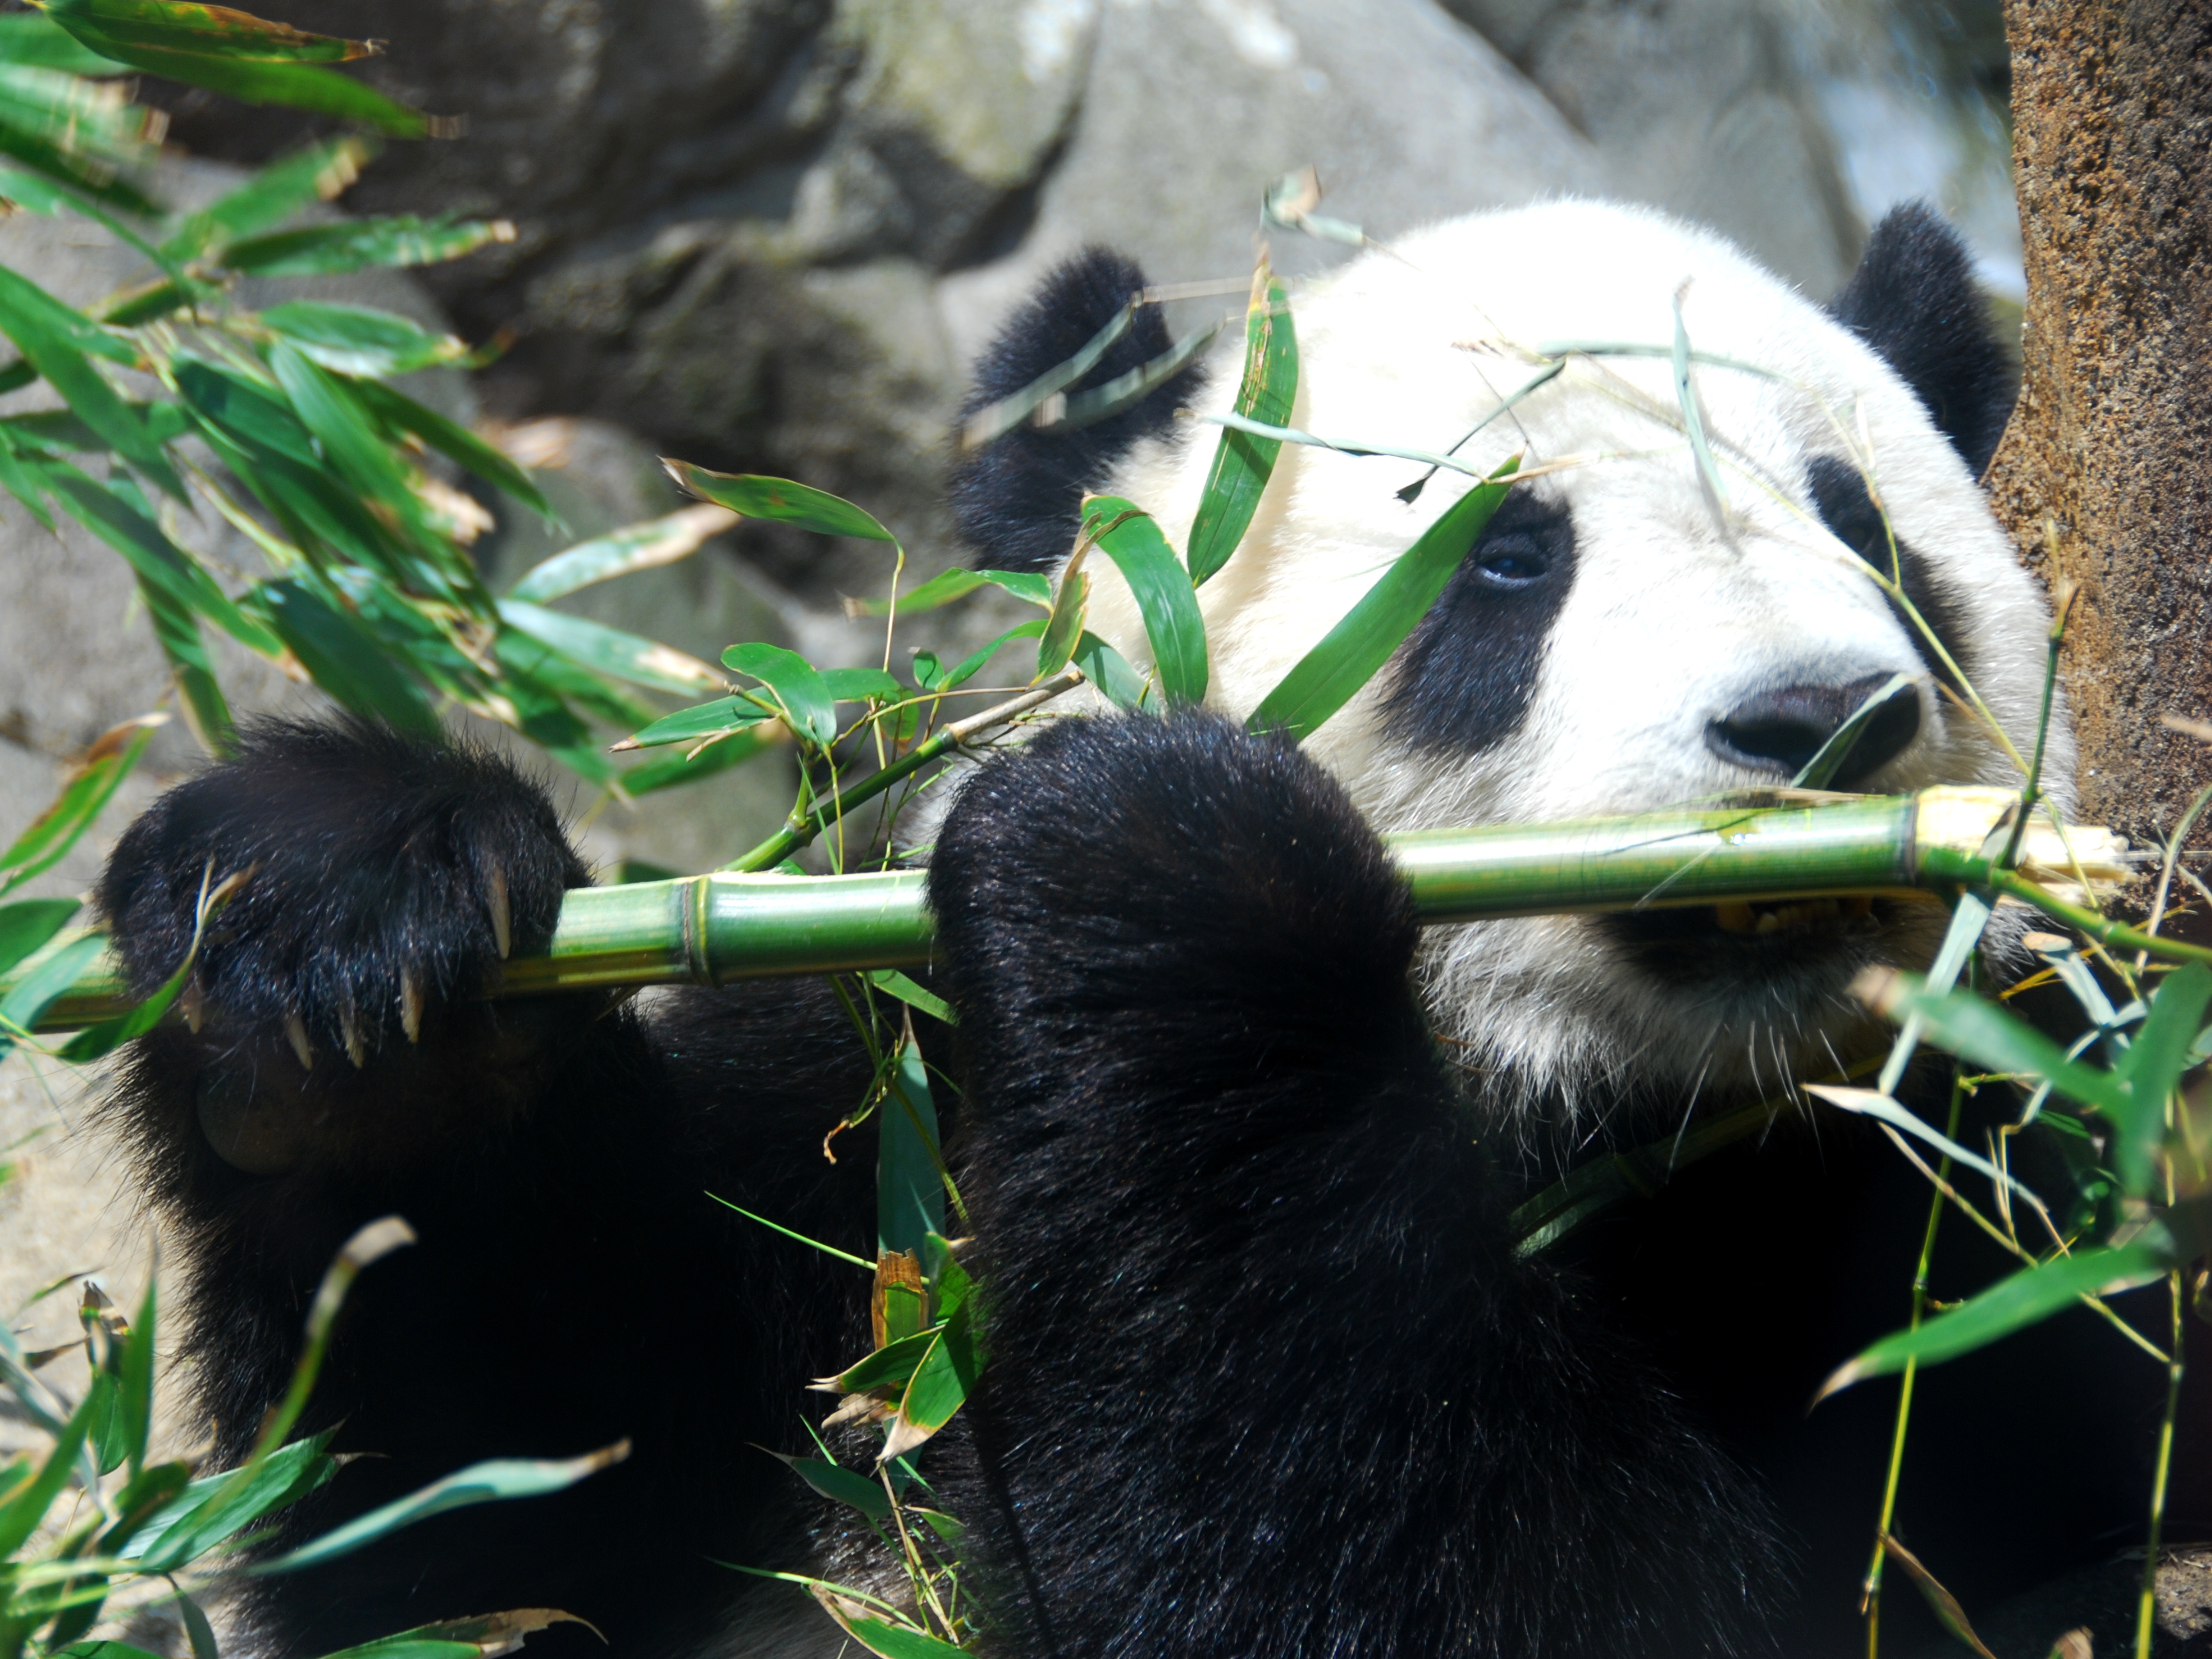 Where is Tai Shan panda now?